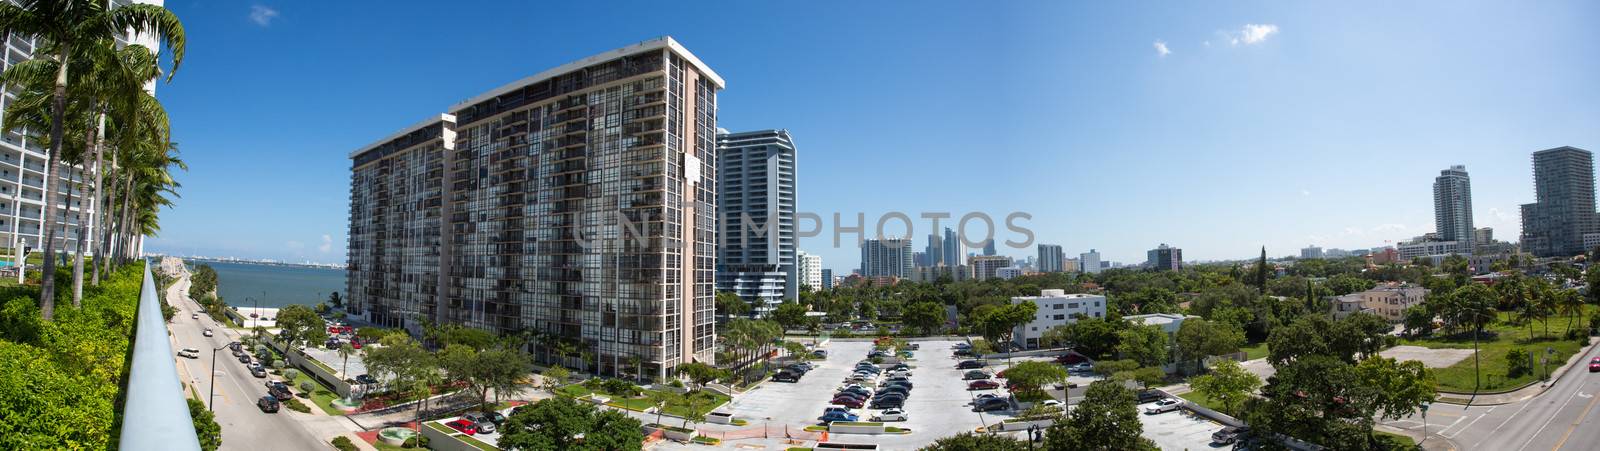 Panoramic skyline of downtown Miami, Florida.